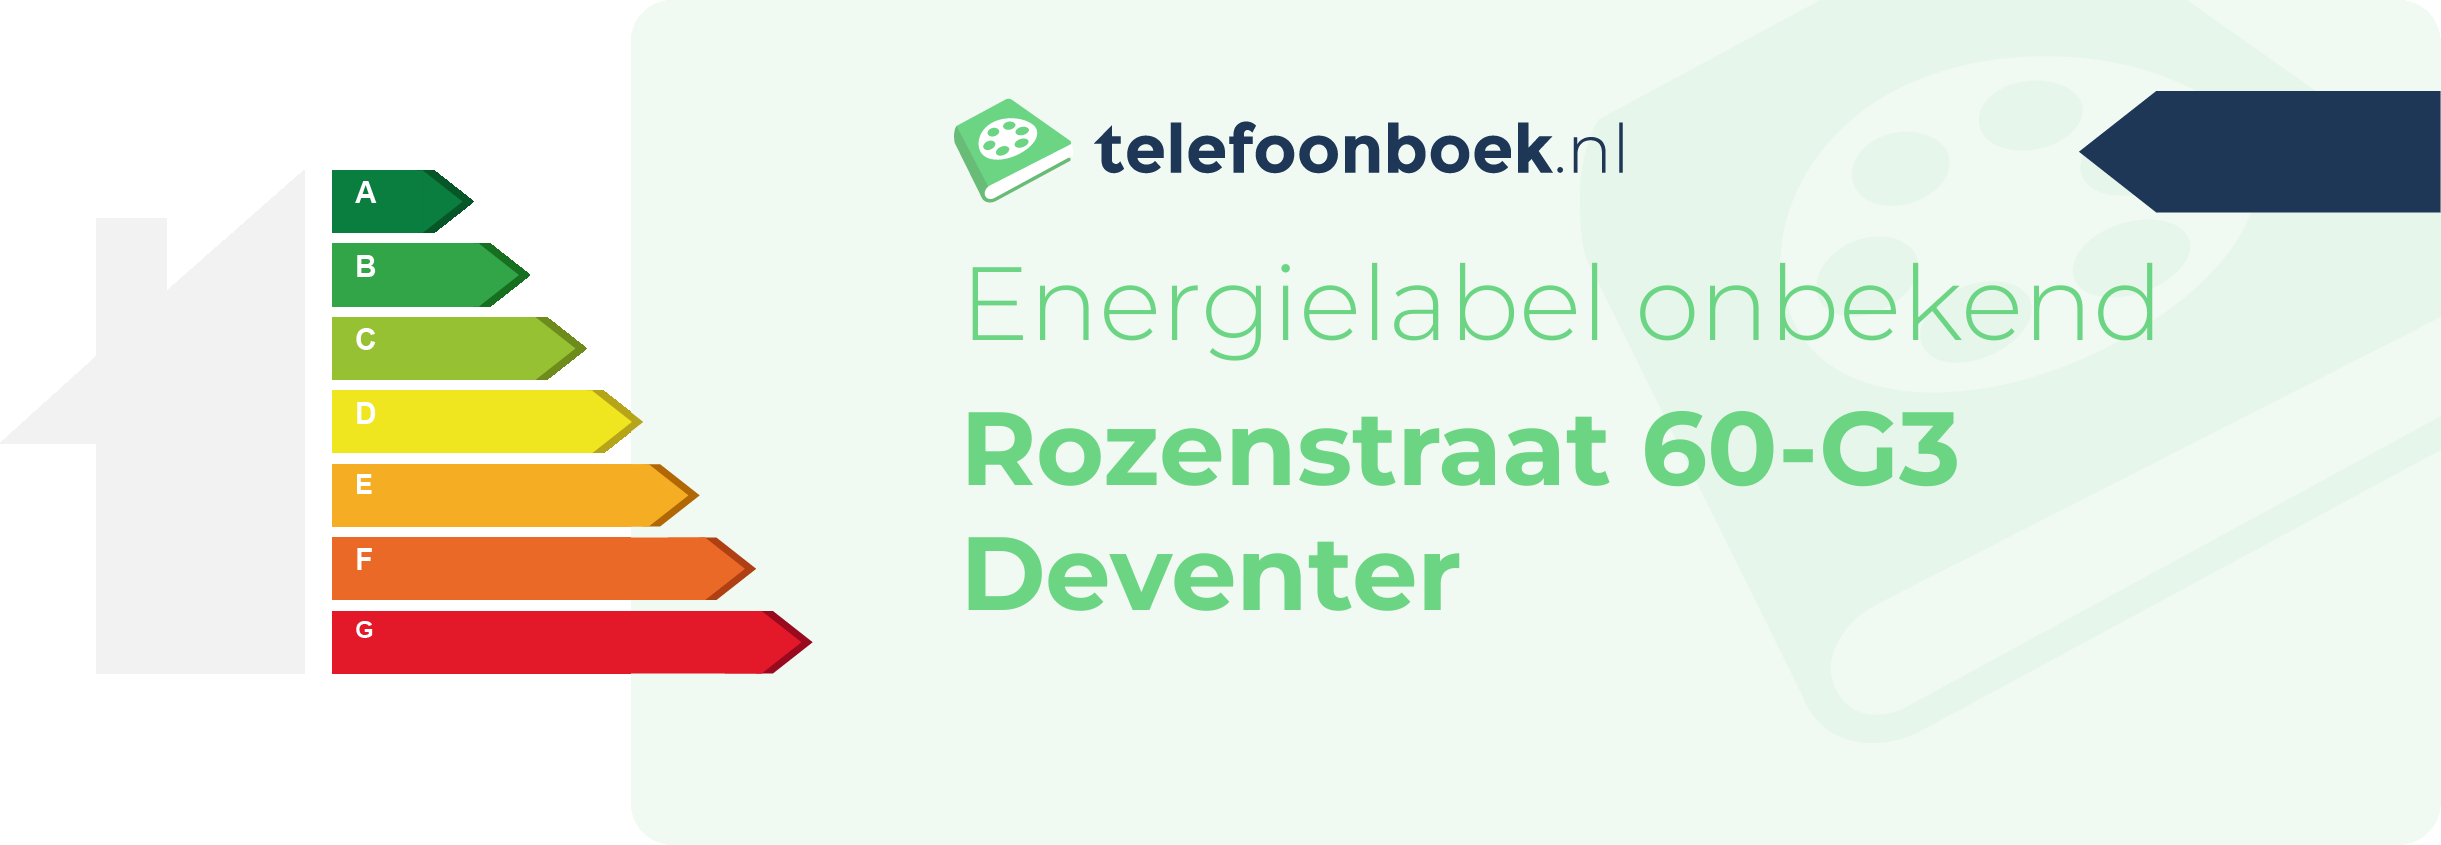 Energielabel Rozenstraat 60-G3 Deventer